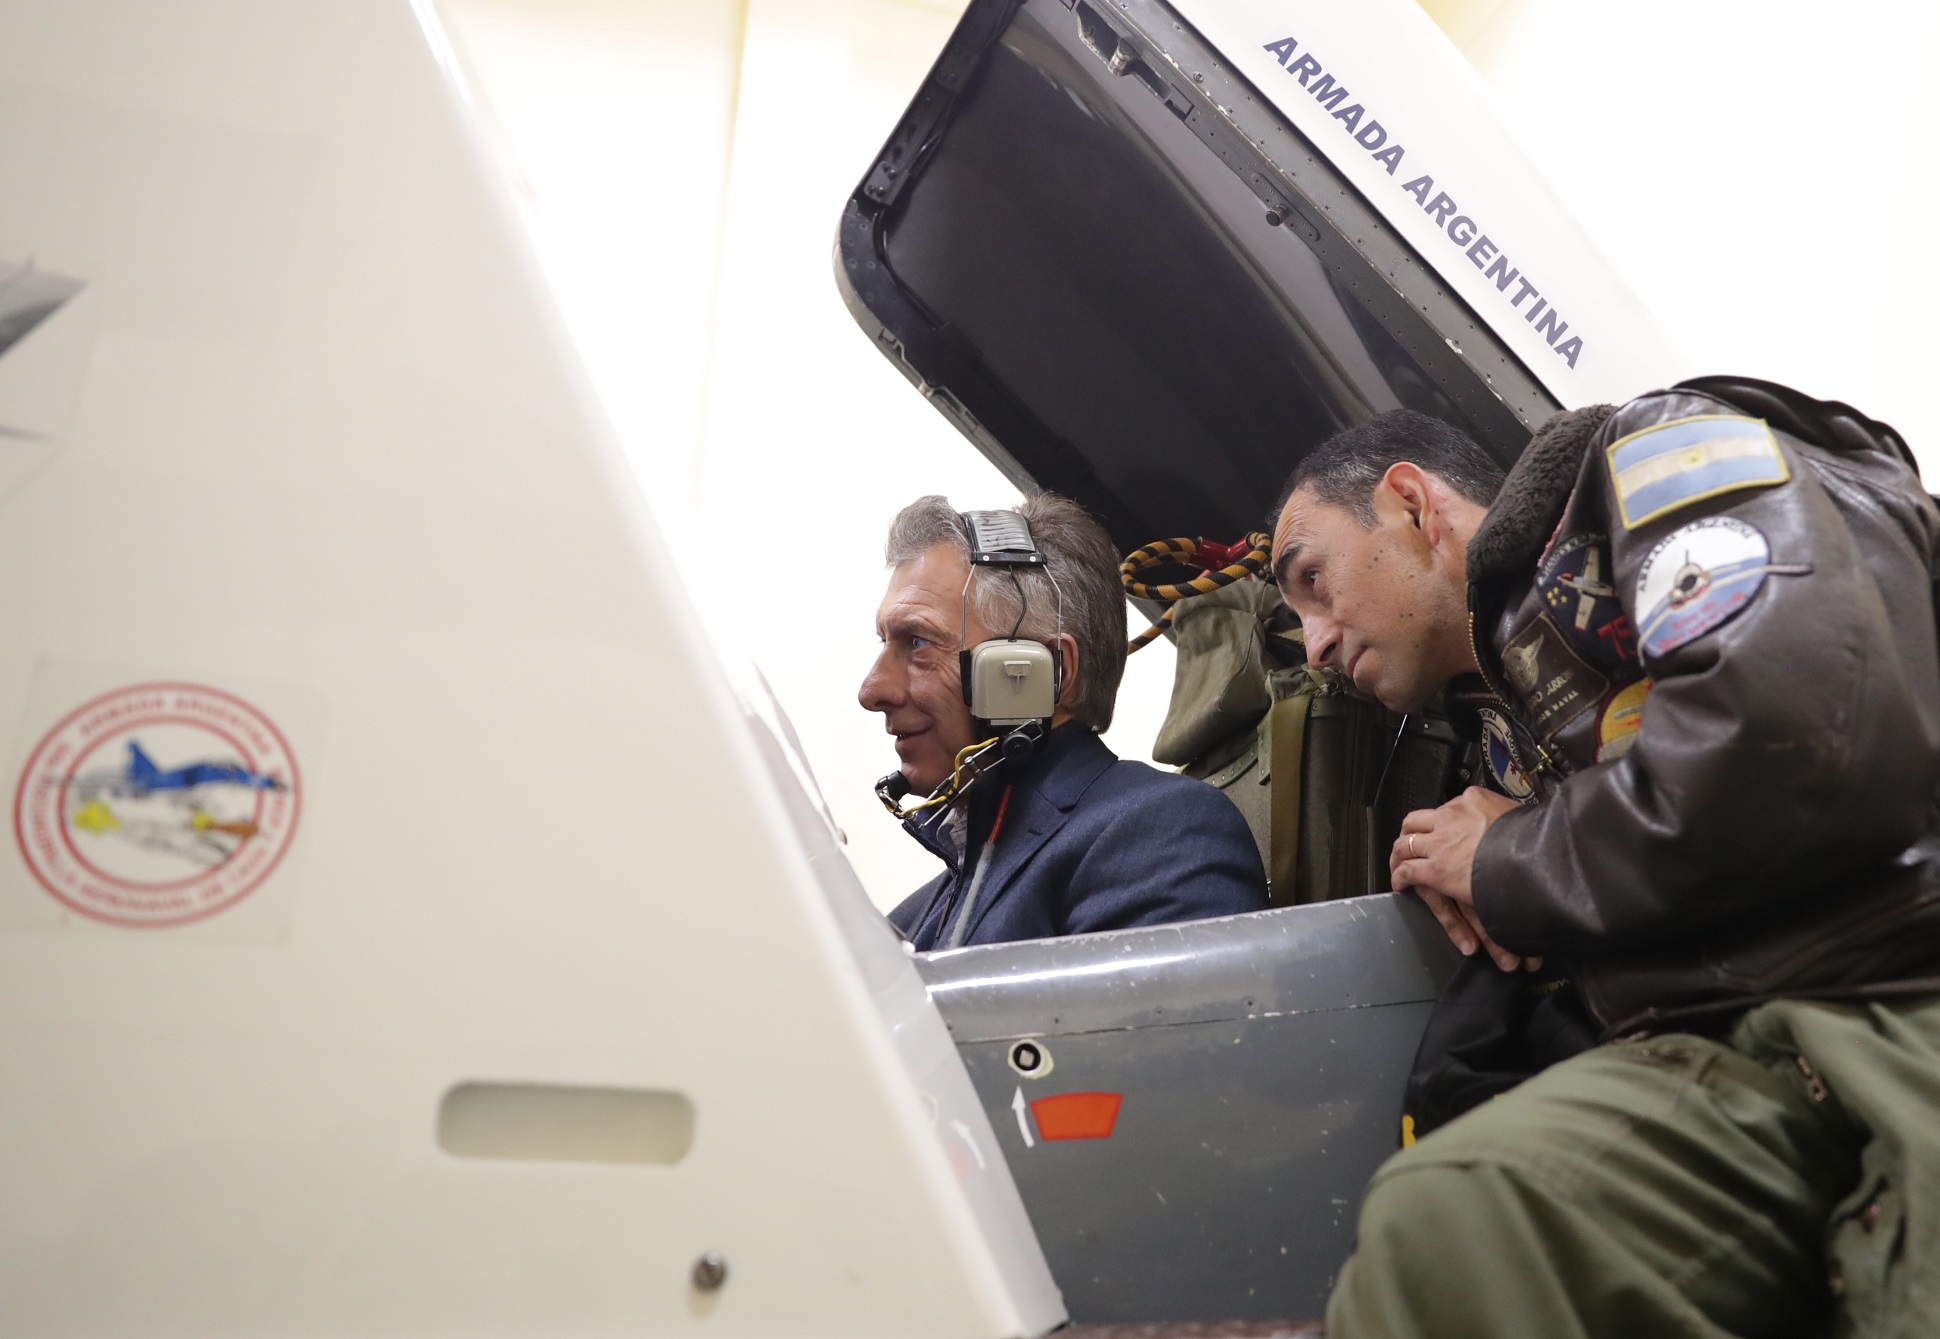 El presidente Macri recorrió la base aeronaval  “Comandante Espora” en Bahía Blanca